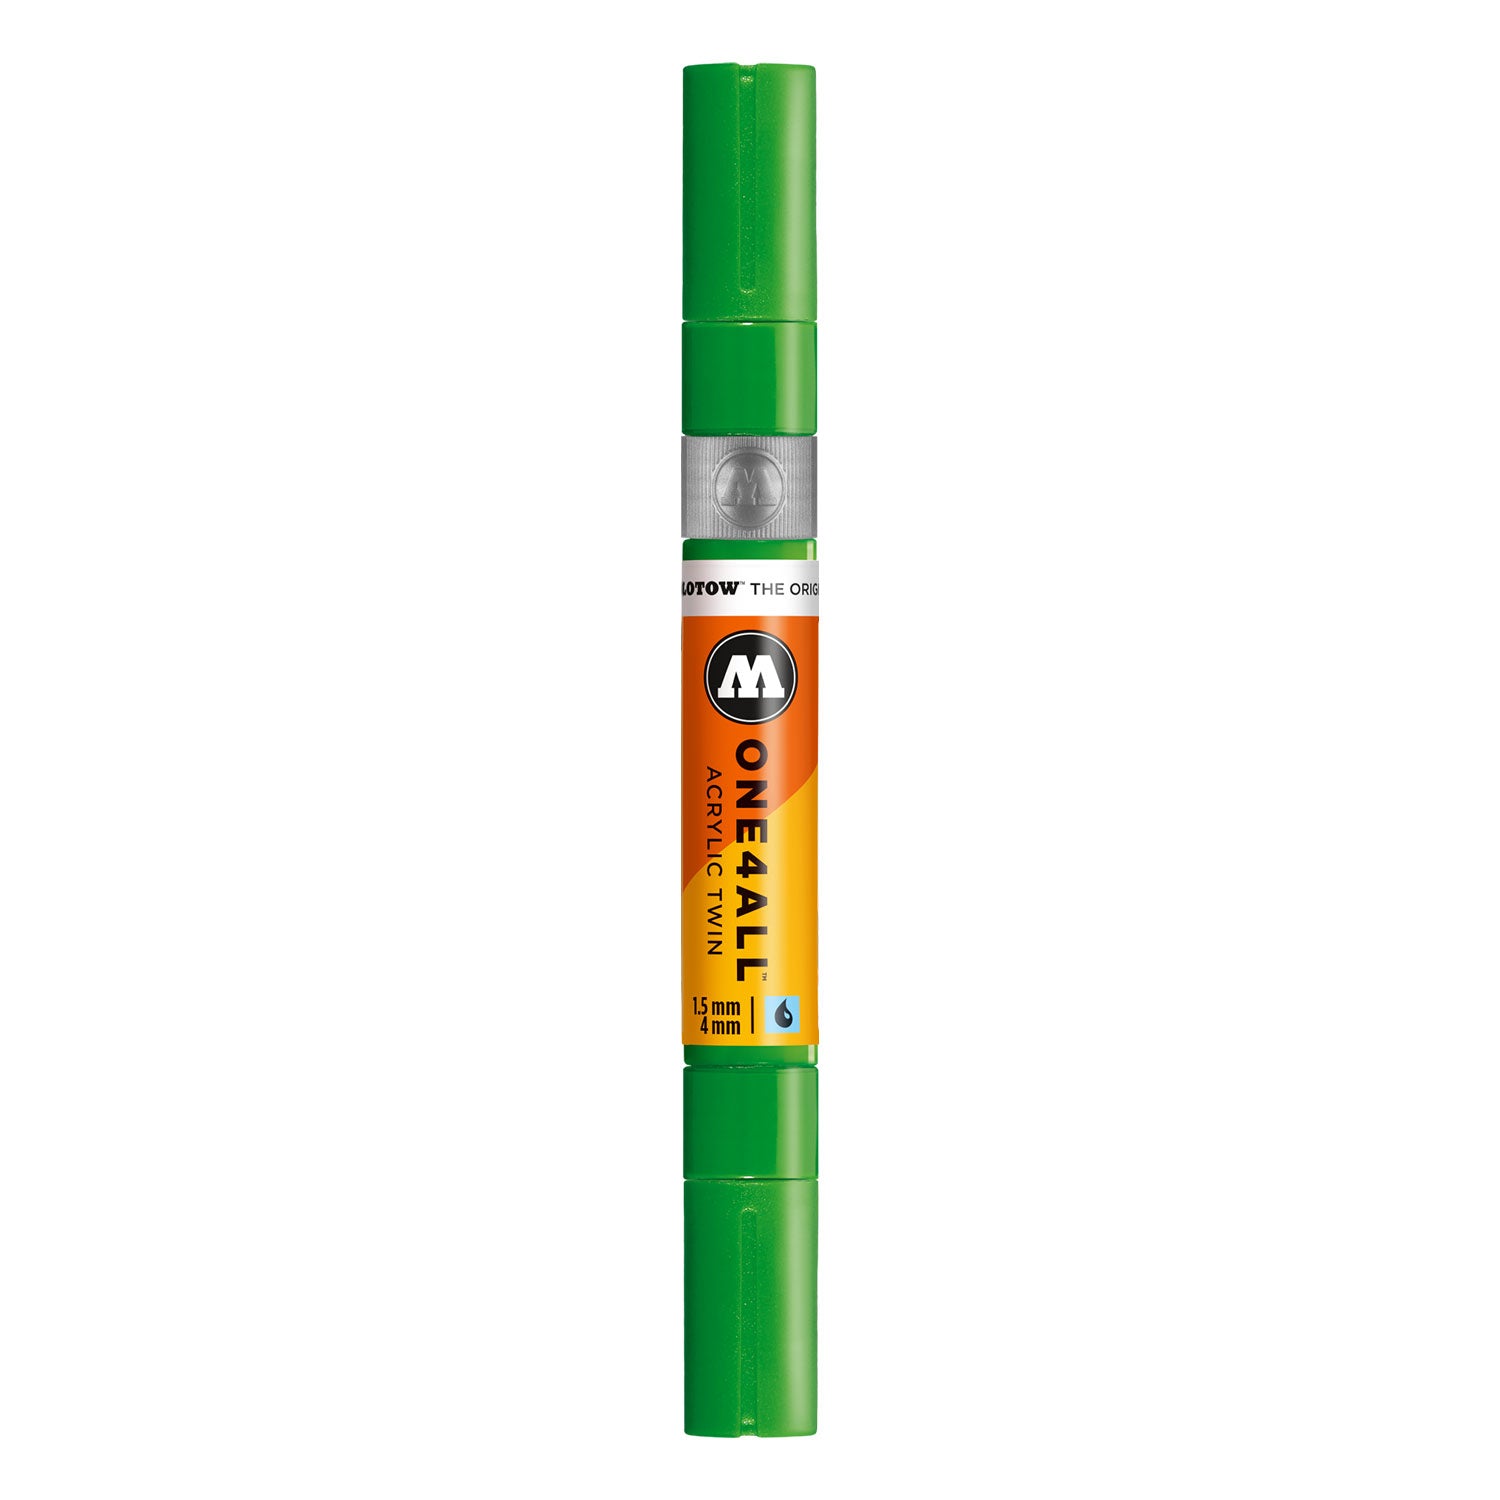 grüner Acrylmarker // ONE4ALL TWIN Marker // hochdeckend und UV-beständig